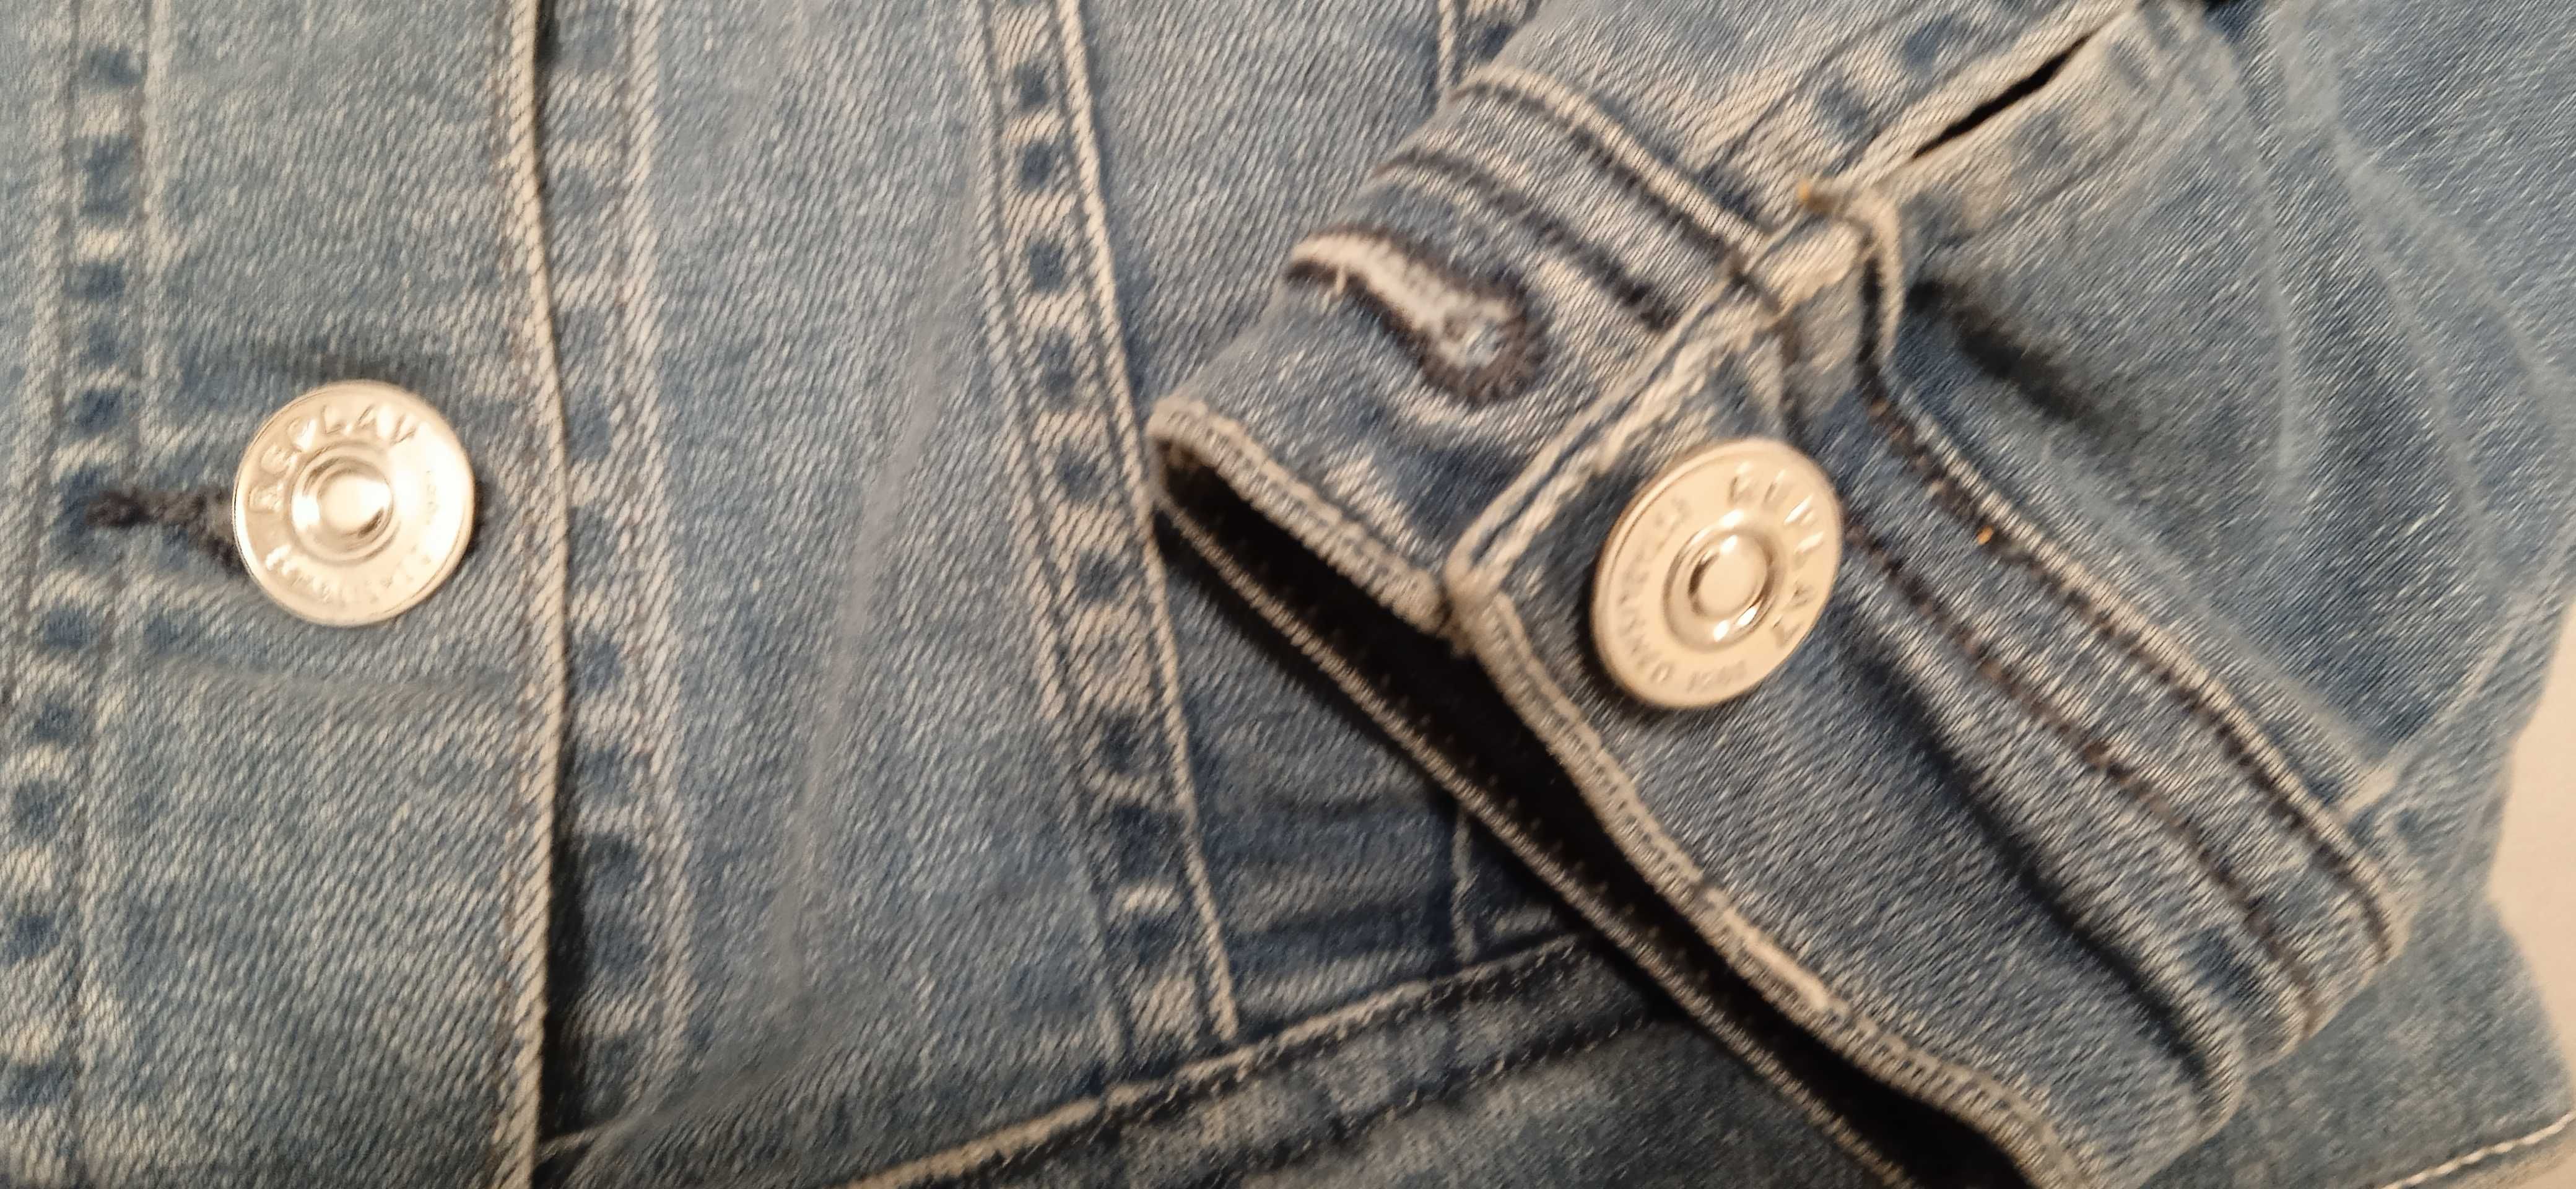 Kurtka jeansowa Ripley dżinsowa dla dziewczynki rozm. 106 104 nowa